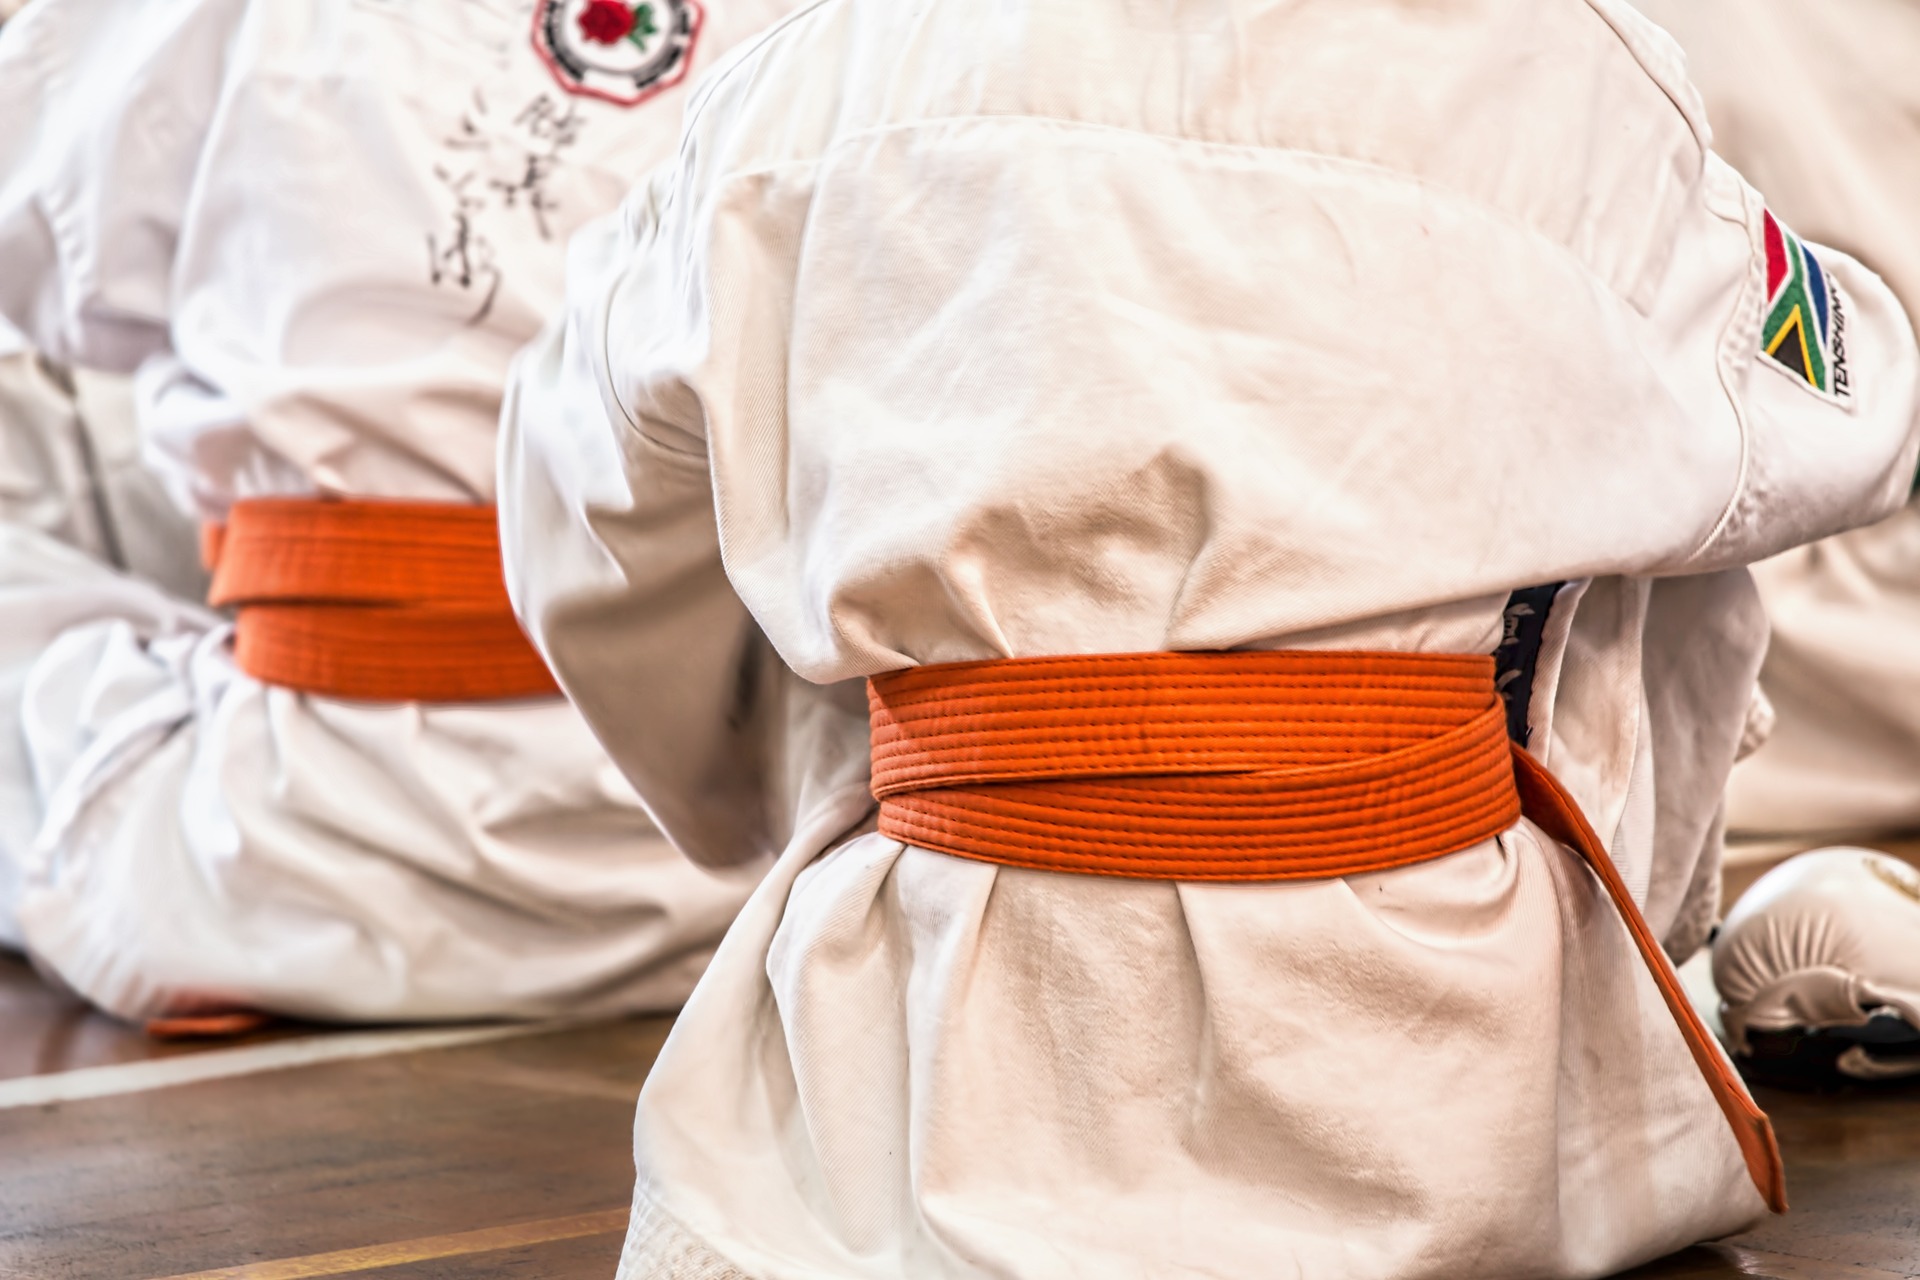 Ander als viele glauben ist Karate nicht nur für Jungspunde. Quelle: pixabay.de